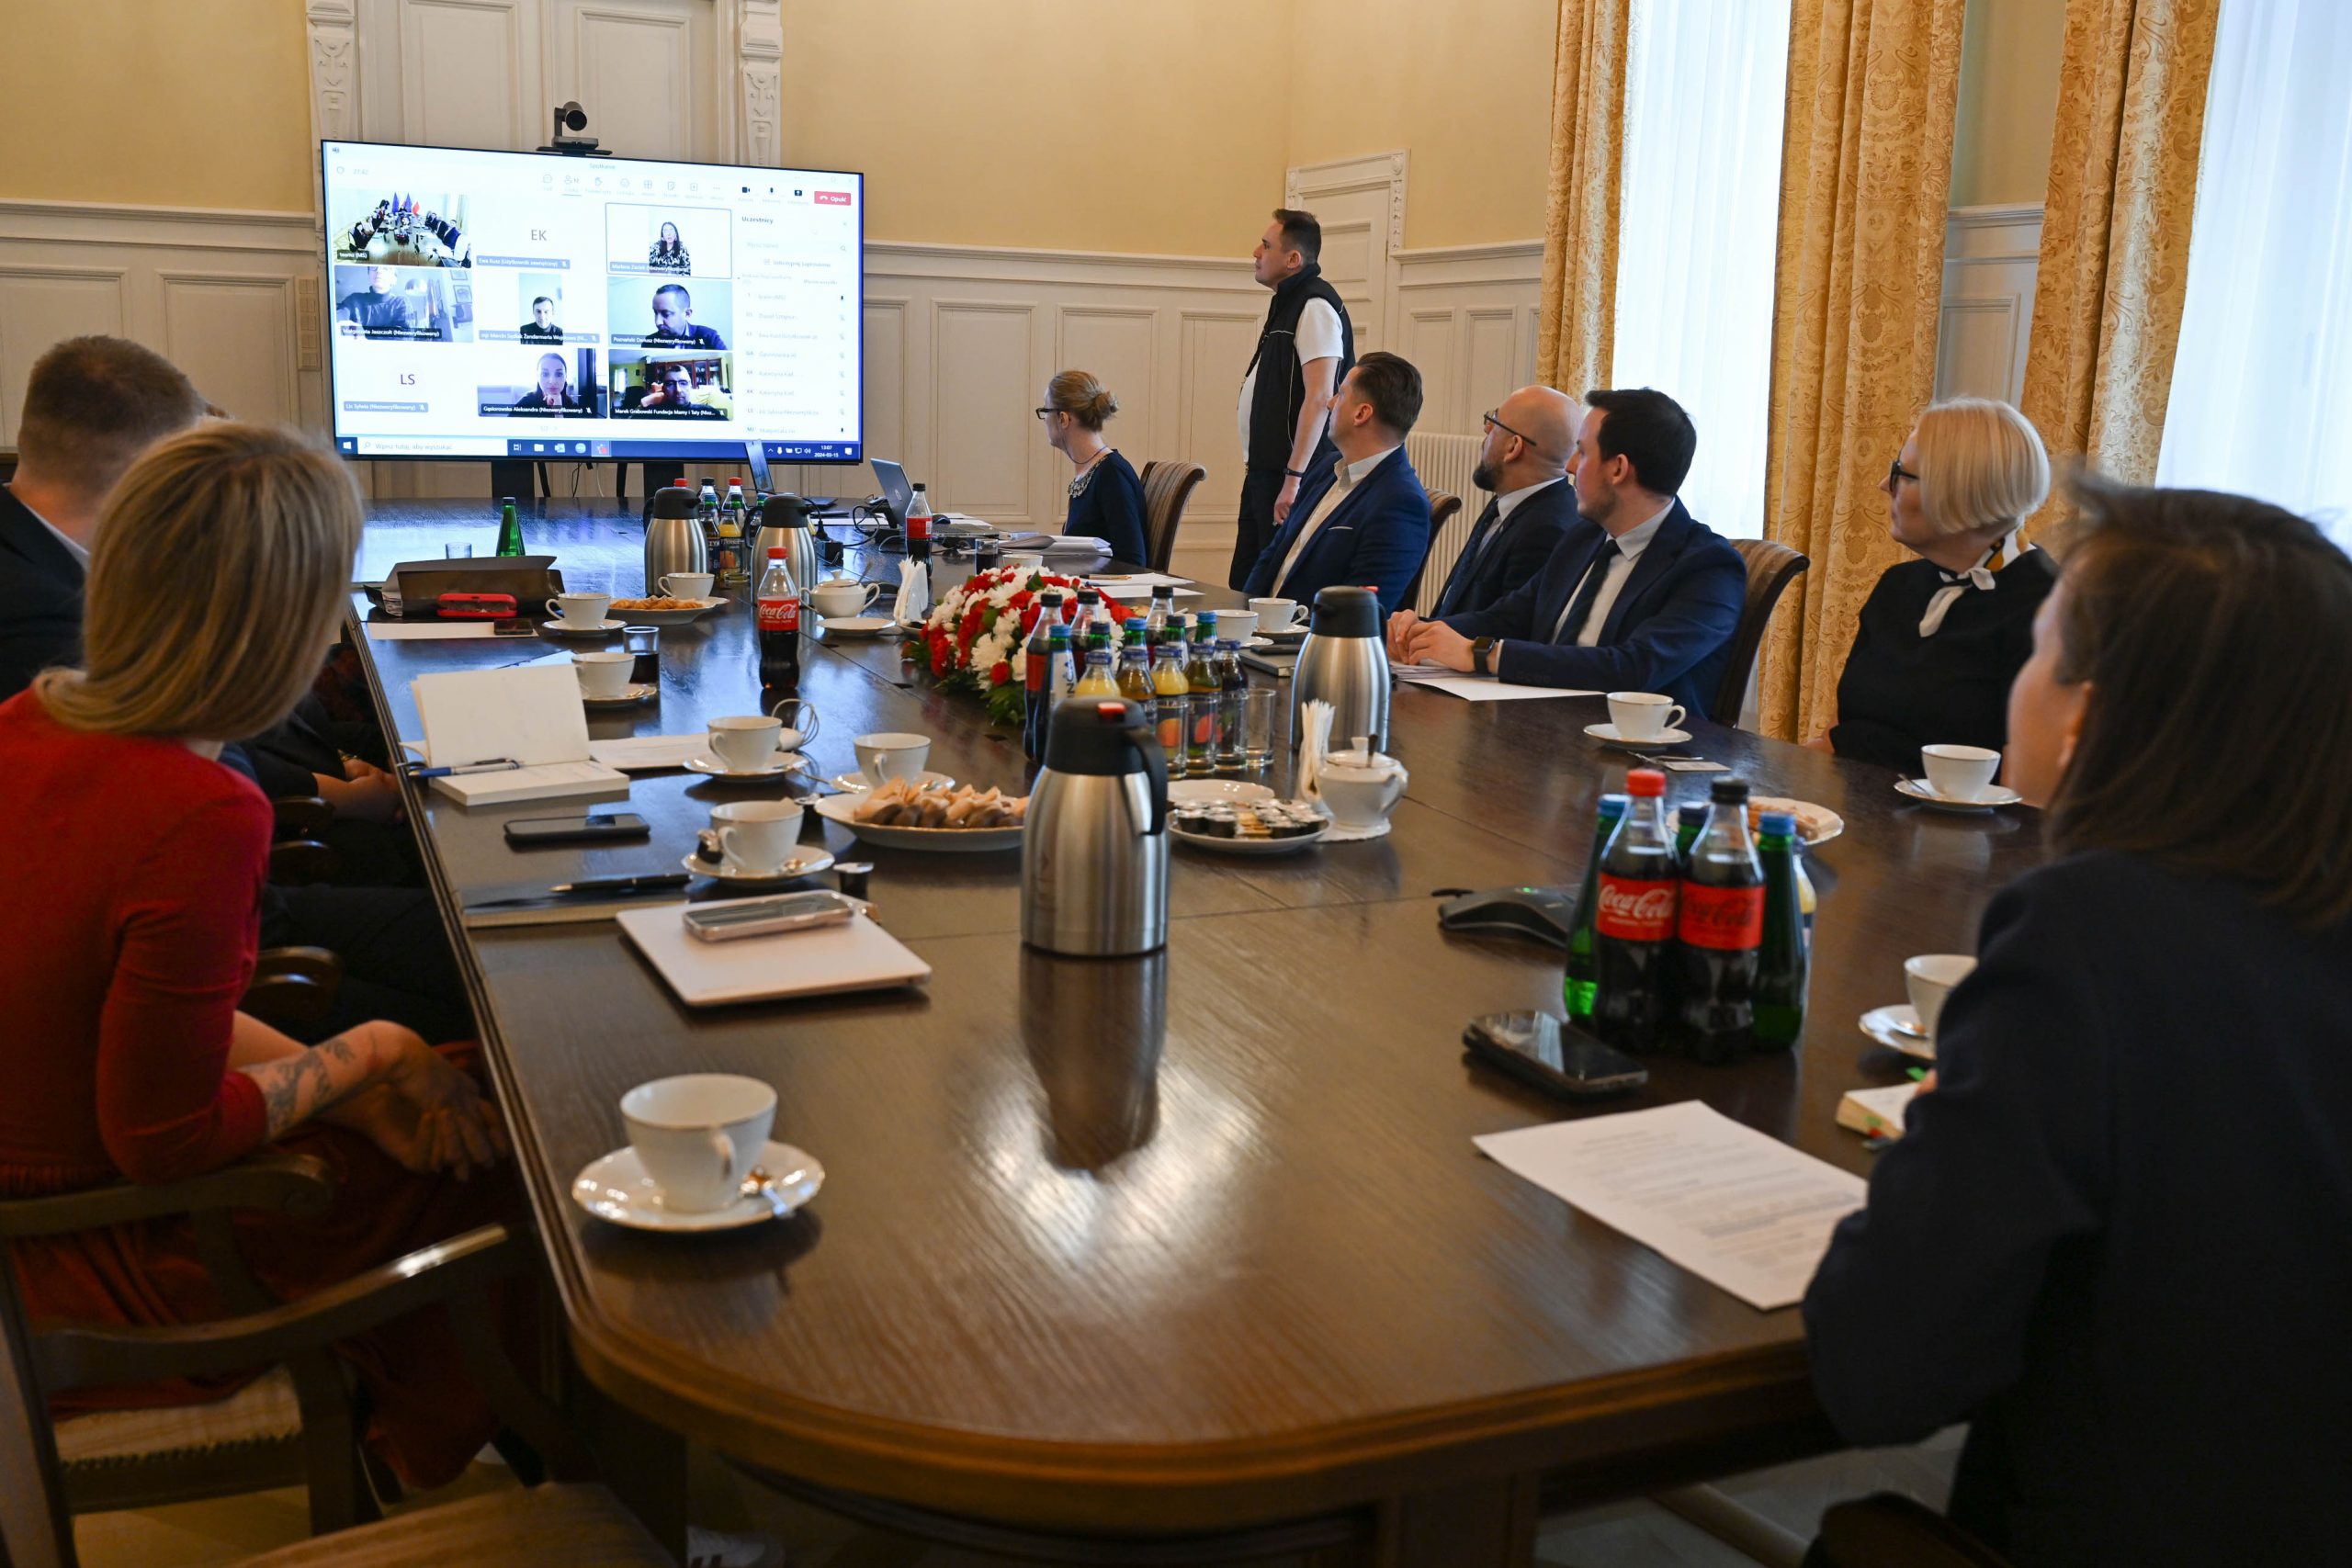 Zdjęcie grupy ludzi przy dużym stole. Kobiety i mężczyźni są elegancko ubrani, patrzą się w stronę ekranu. Na ekranie połączeni uczestnicy spotkania.